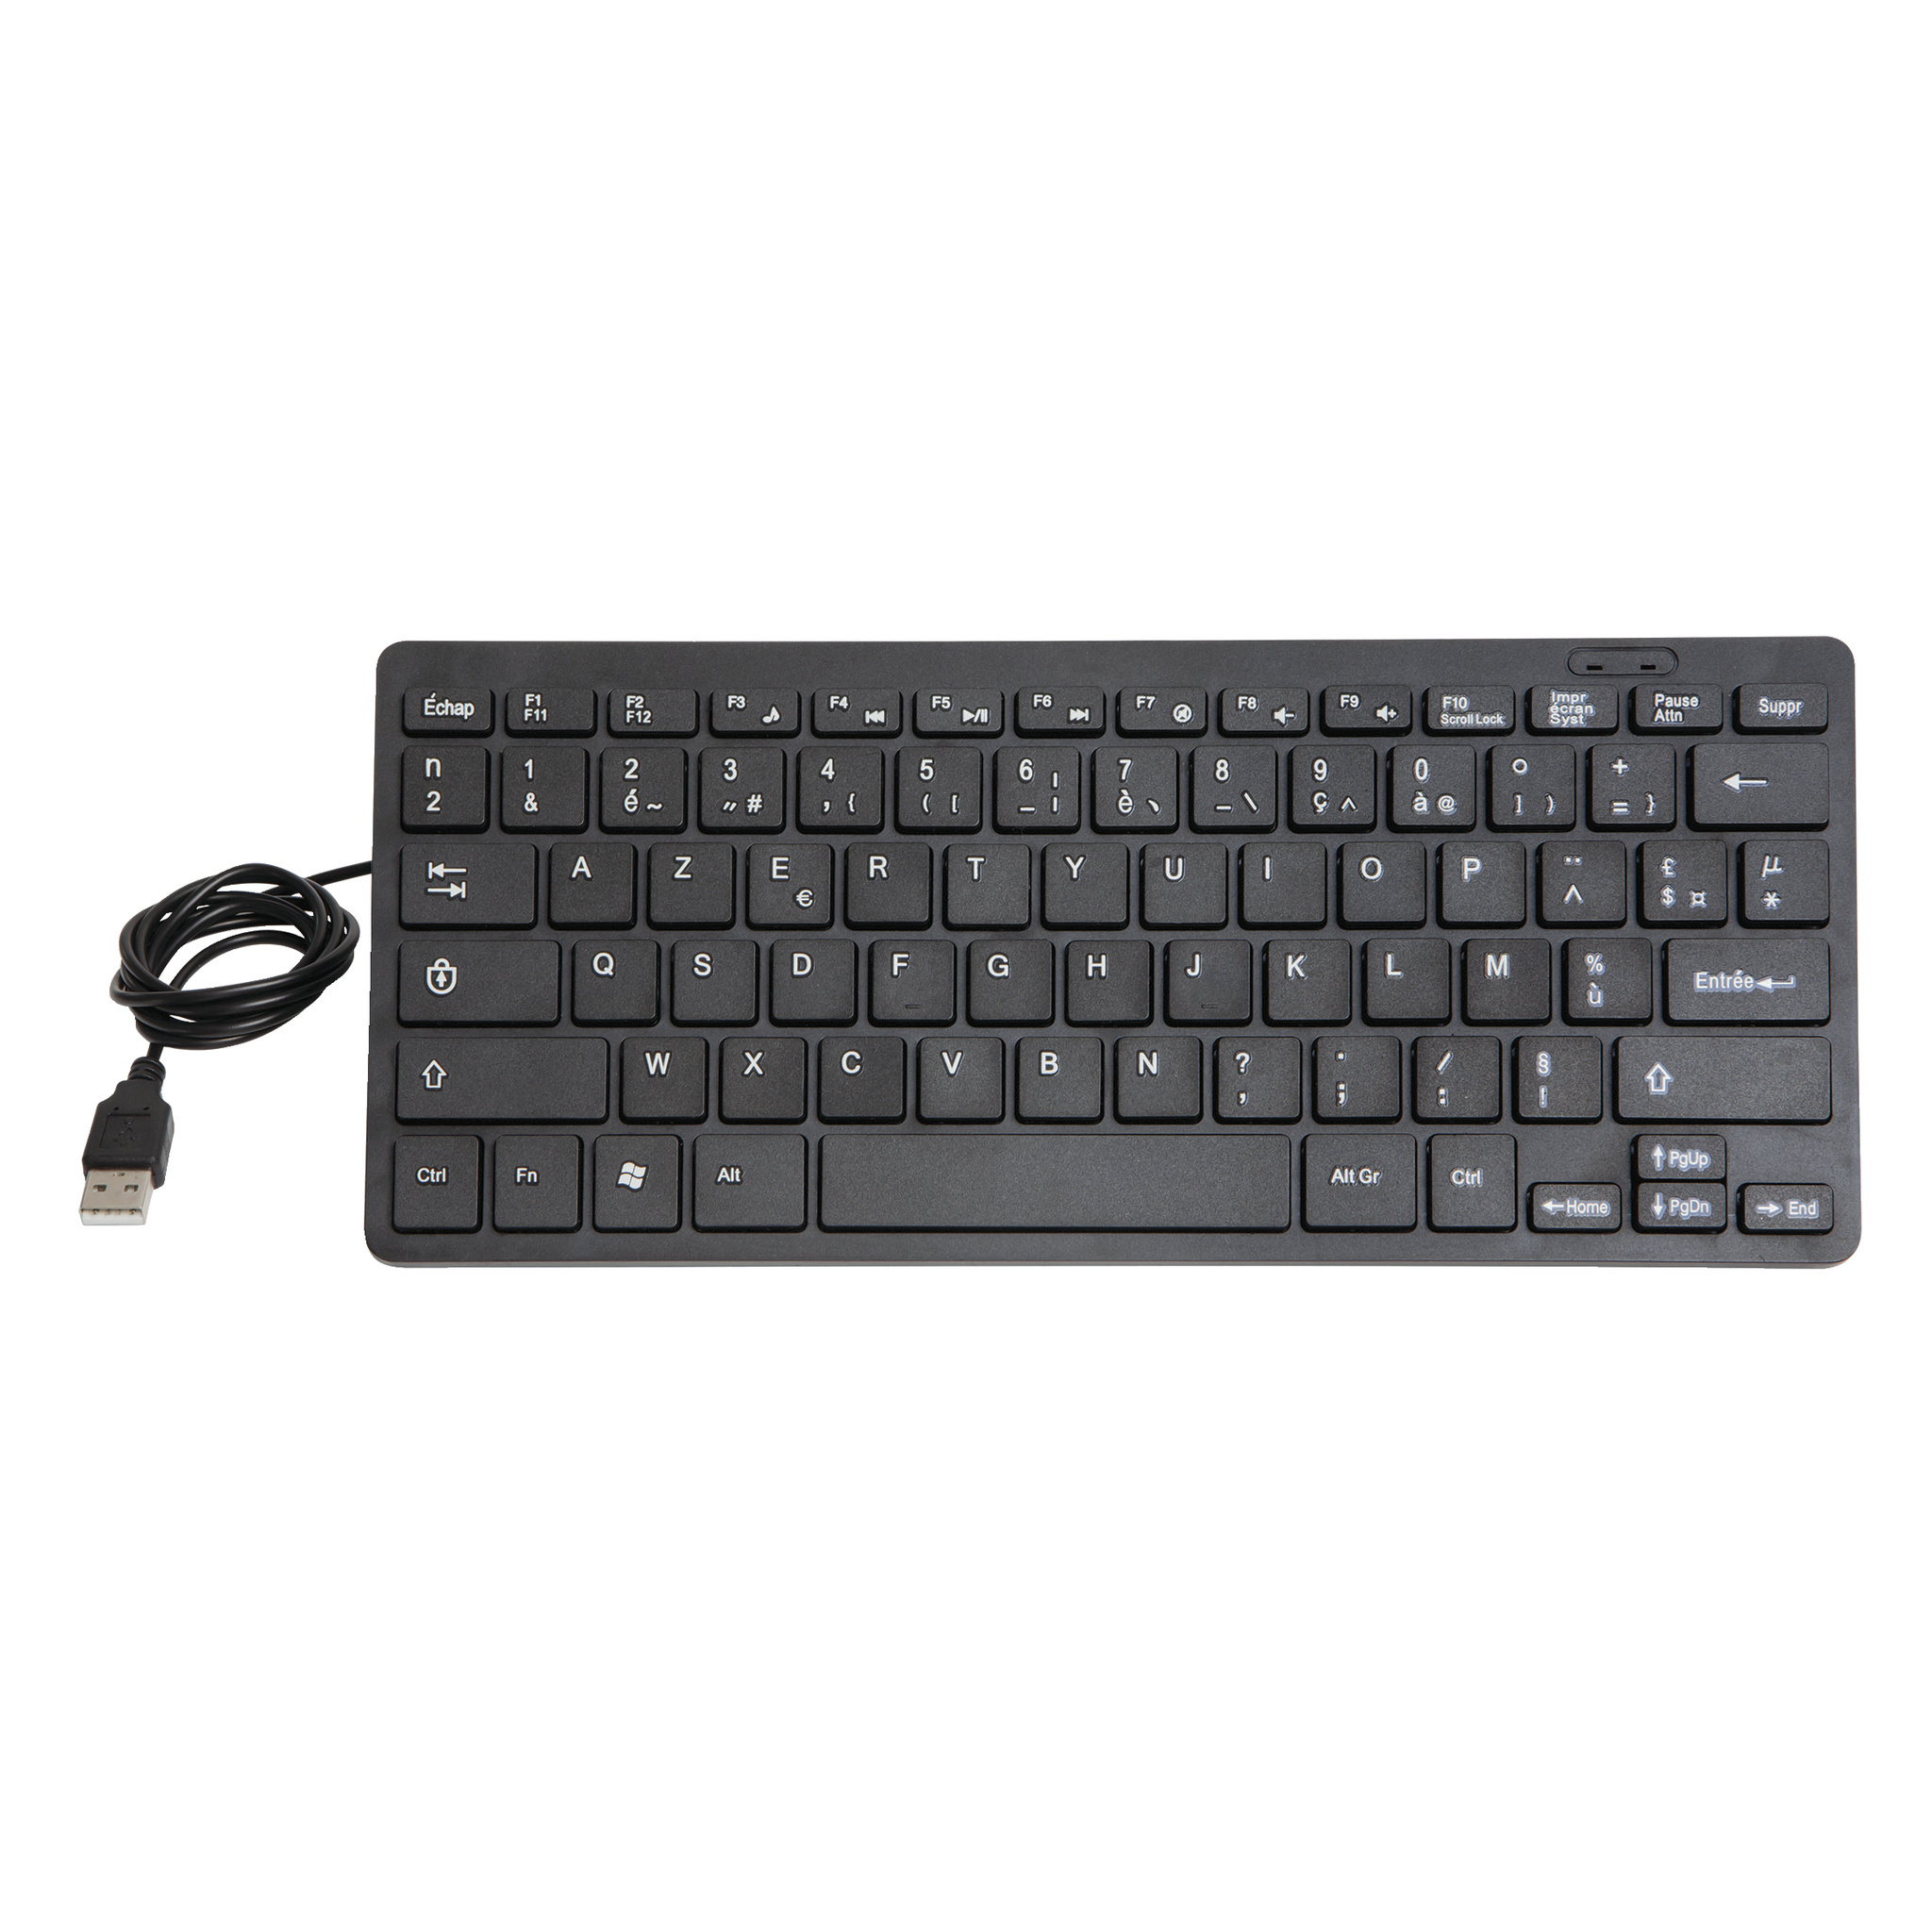 Ongunstig ga winkelen onszelf Frans toetsenbord: keyboard AZERTY met USB voor in pc/laptop | robuust -  Druppellader.com